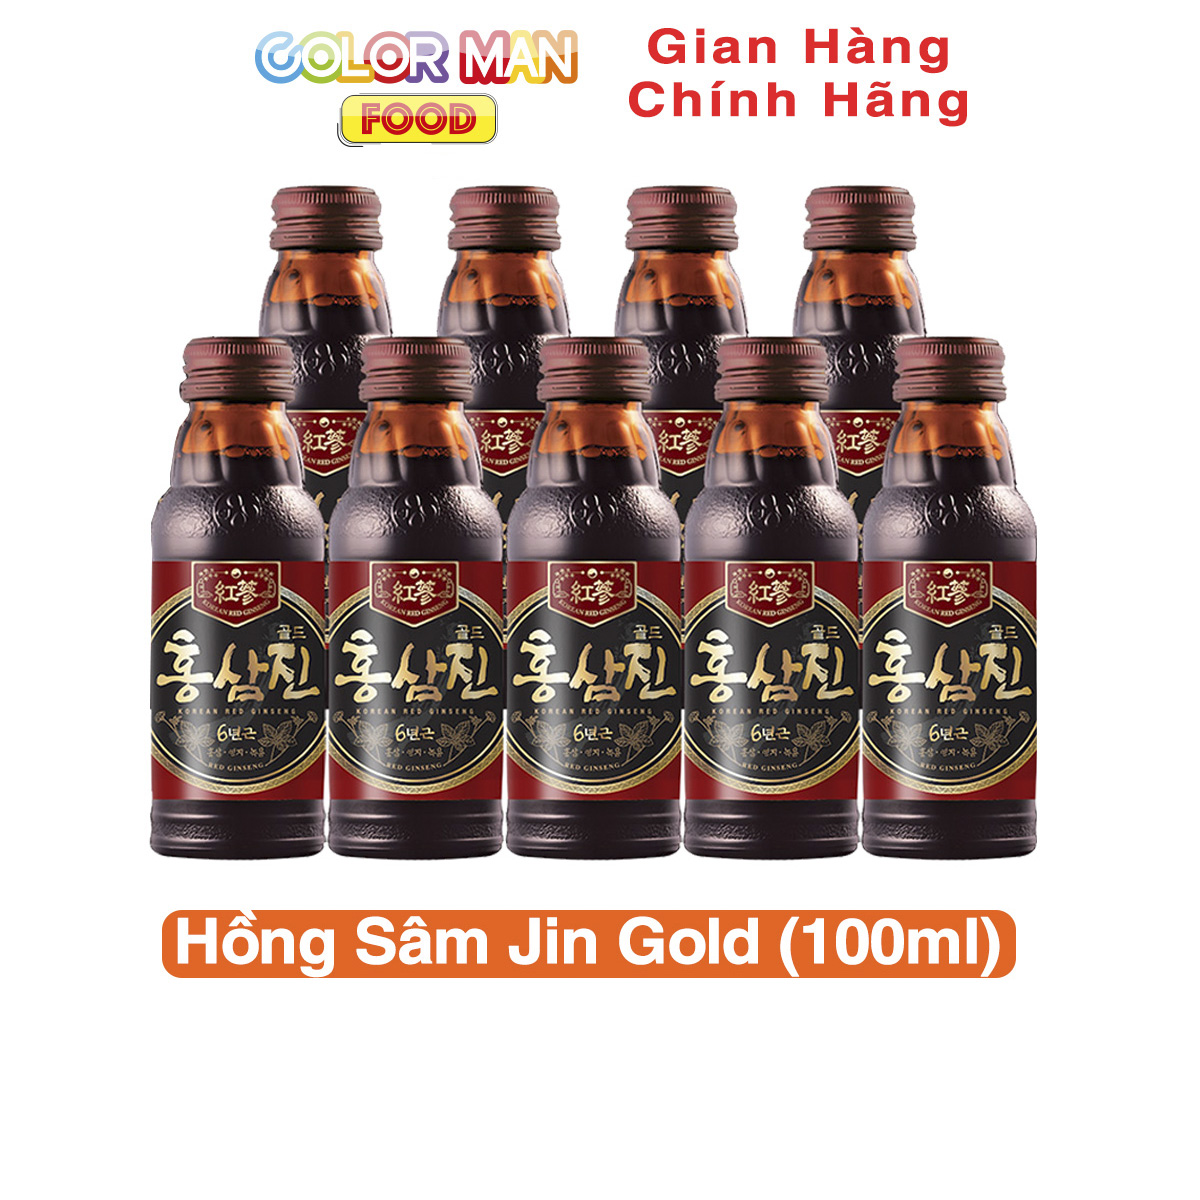 Nước Hồng Sâm Jin Gold 100ml Color Man giúp bồi bổ và nâng cao sức khỏe